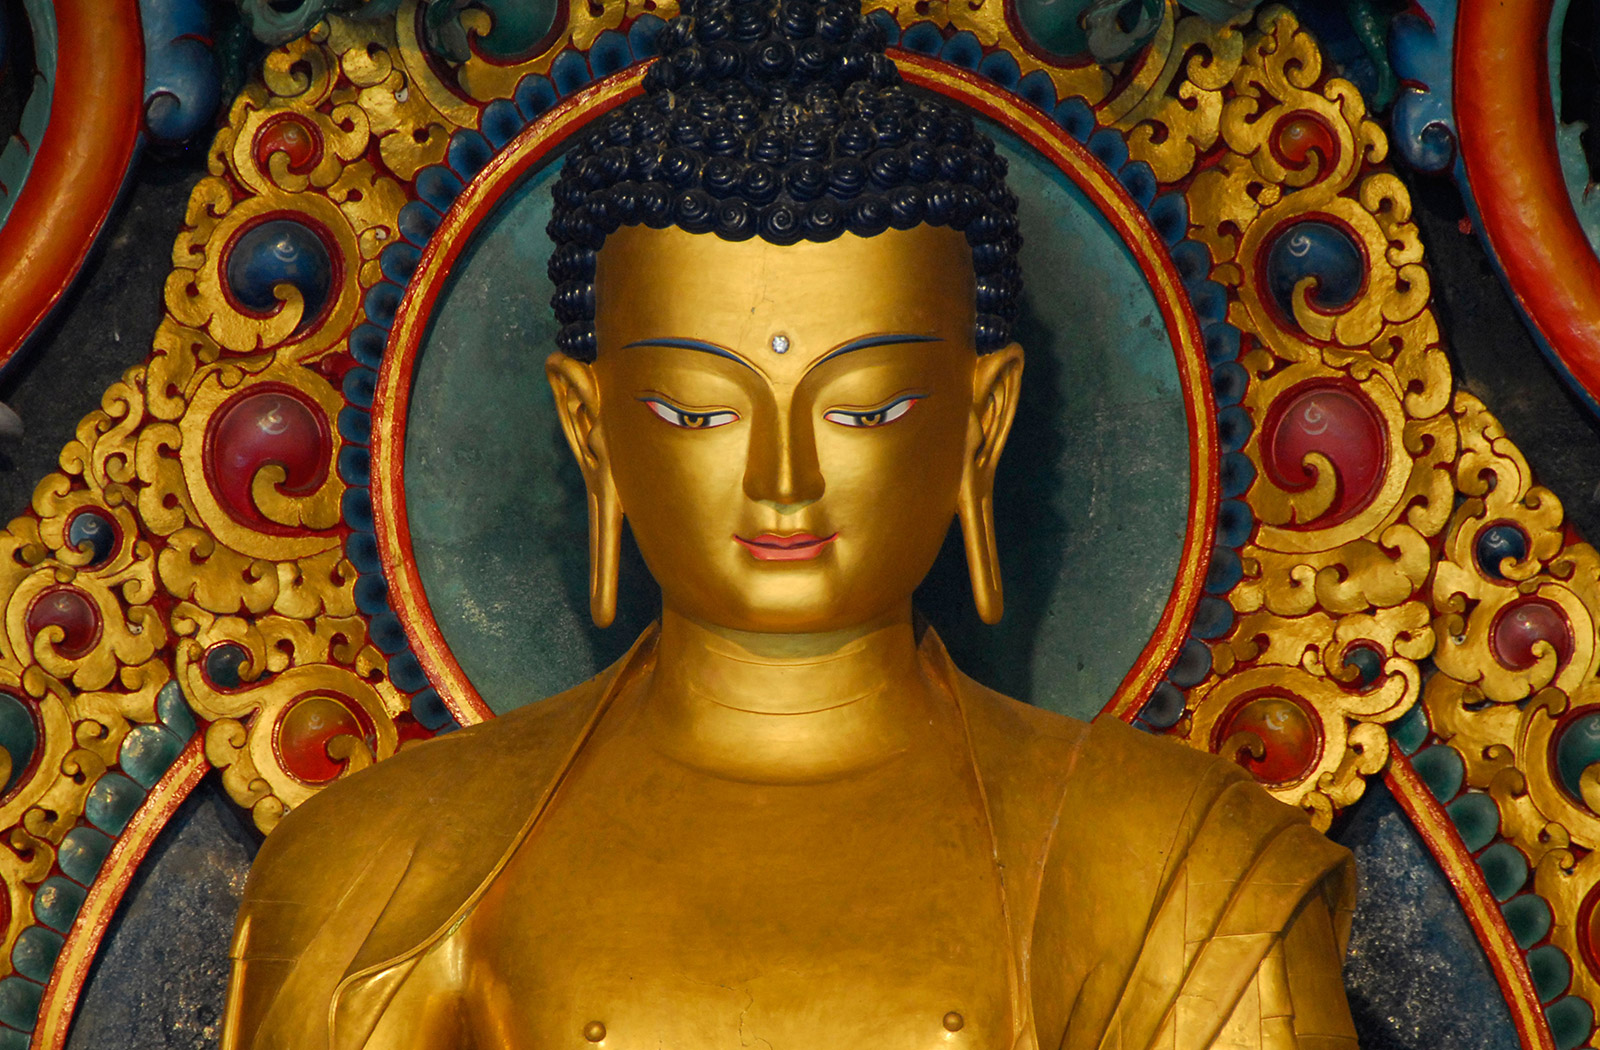 Прическа буды. Тхеравада-хинаяна. Буддизм Тхеравада /хинаяна Будда. Хинаяна буддизм.